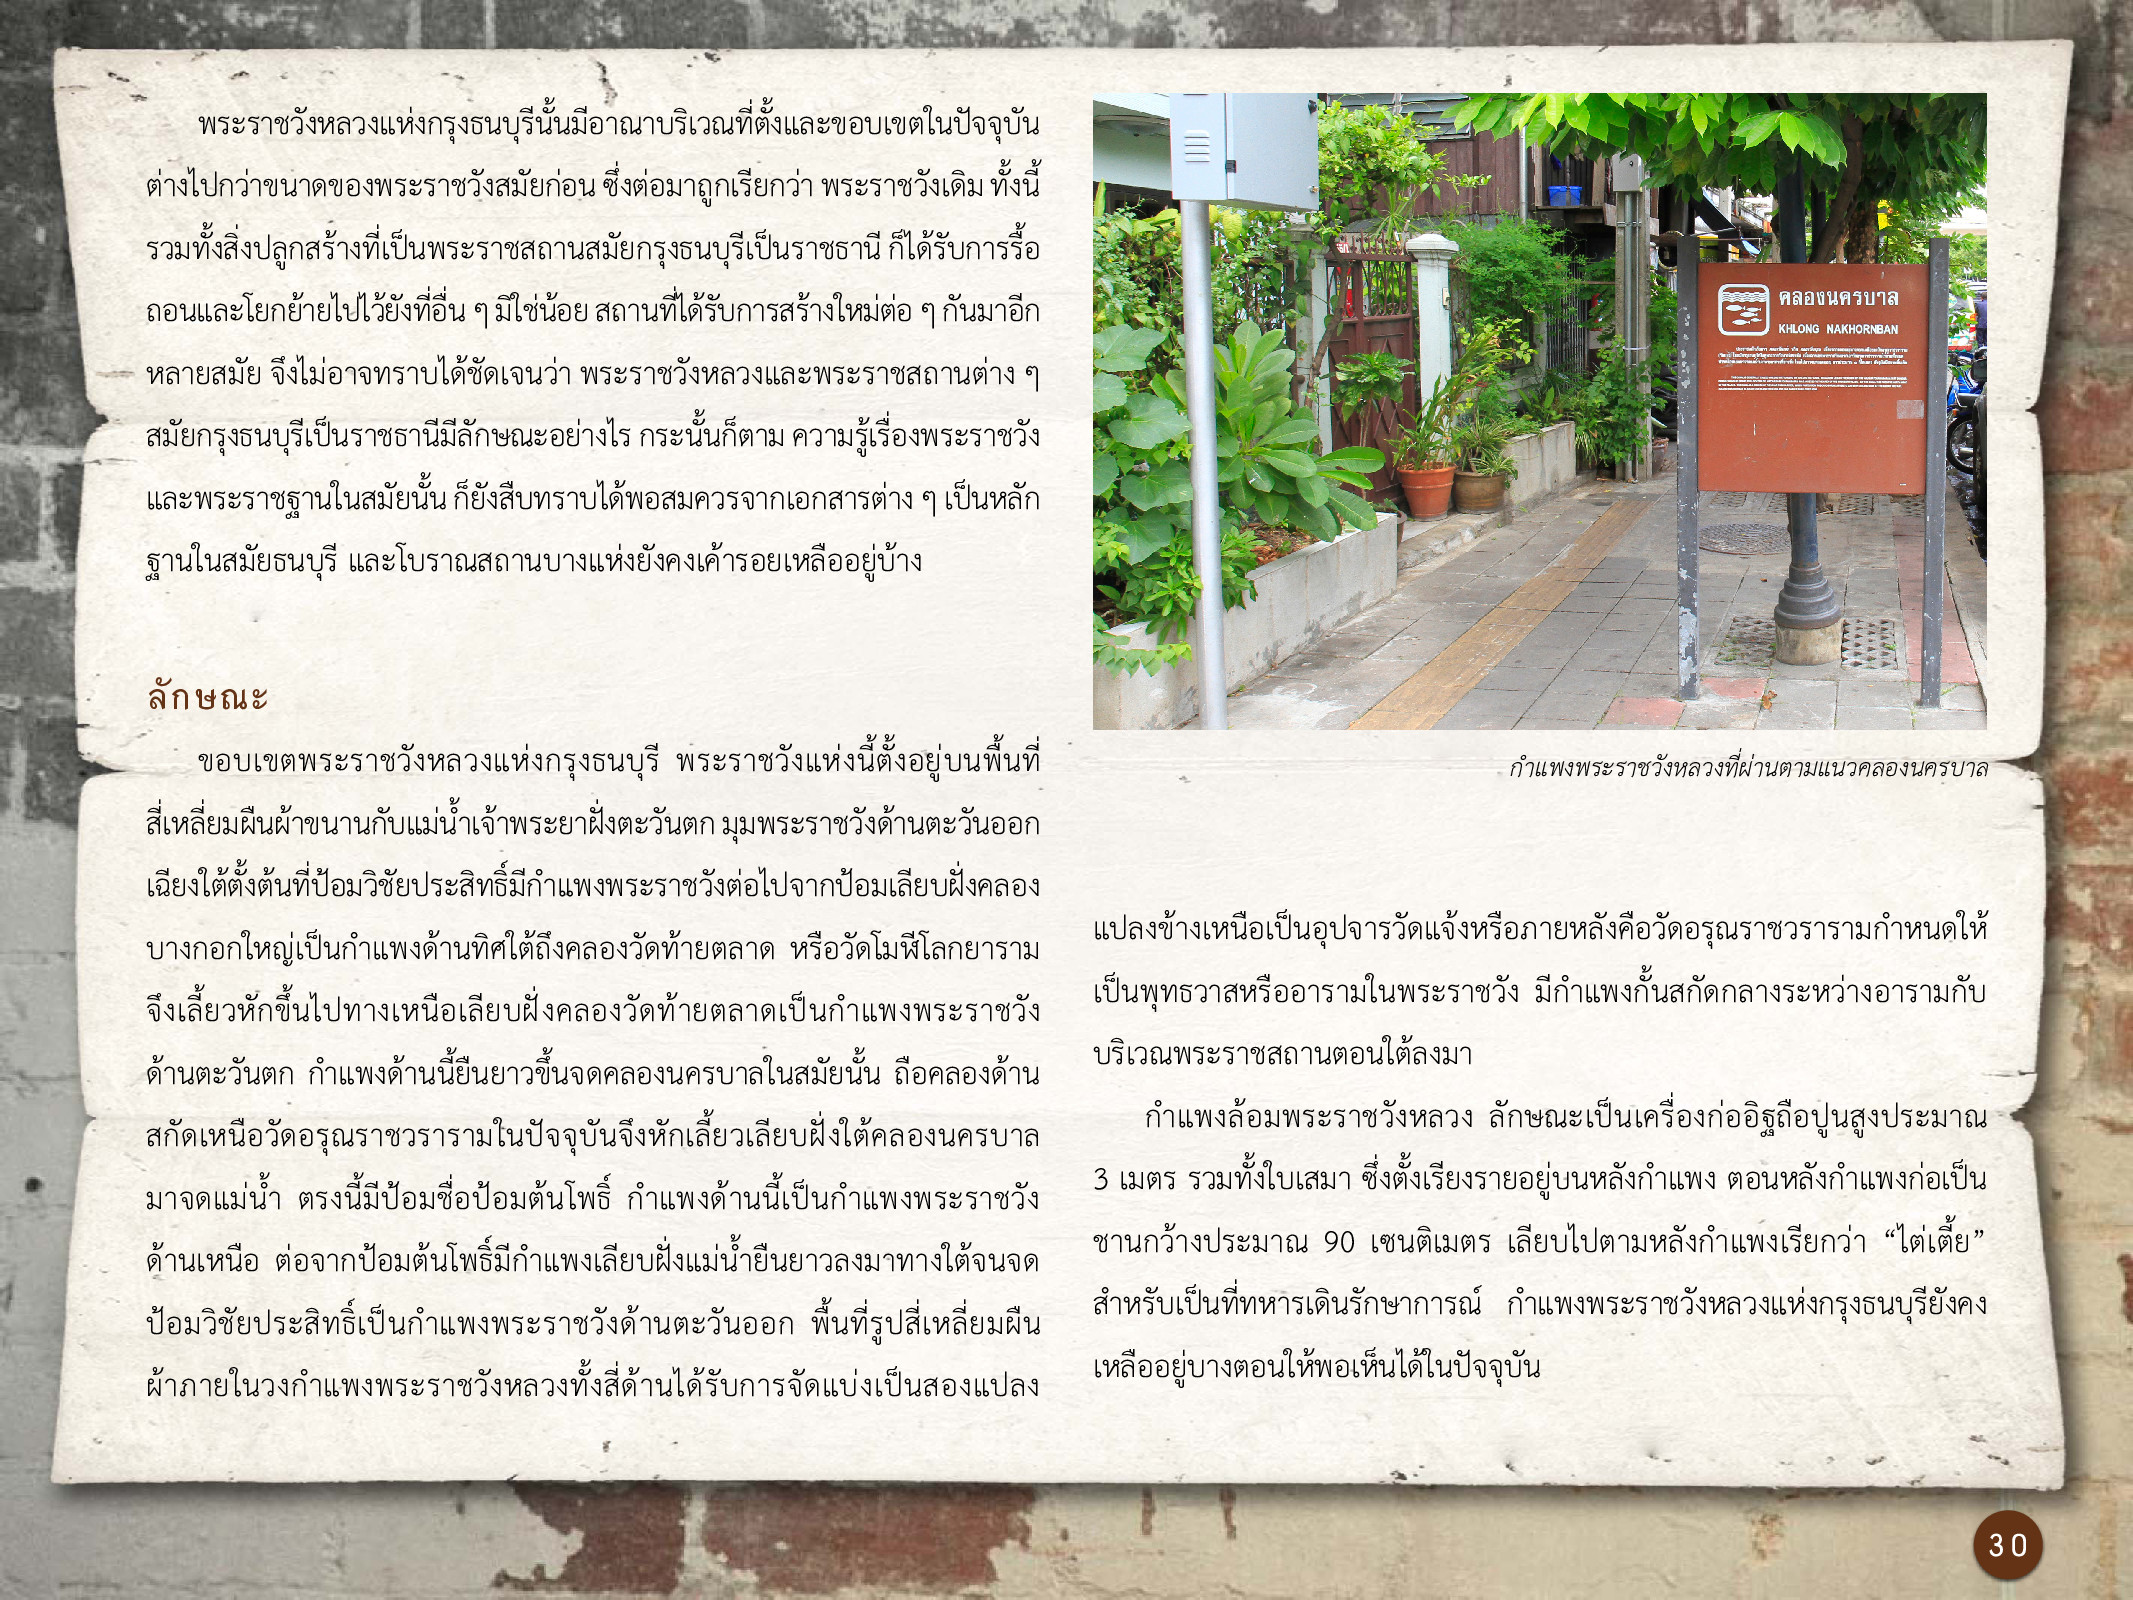 ศิลปกรรมกรุงธนบุรี ./images/encyclopedia/30.jpg